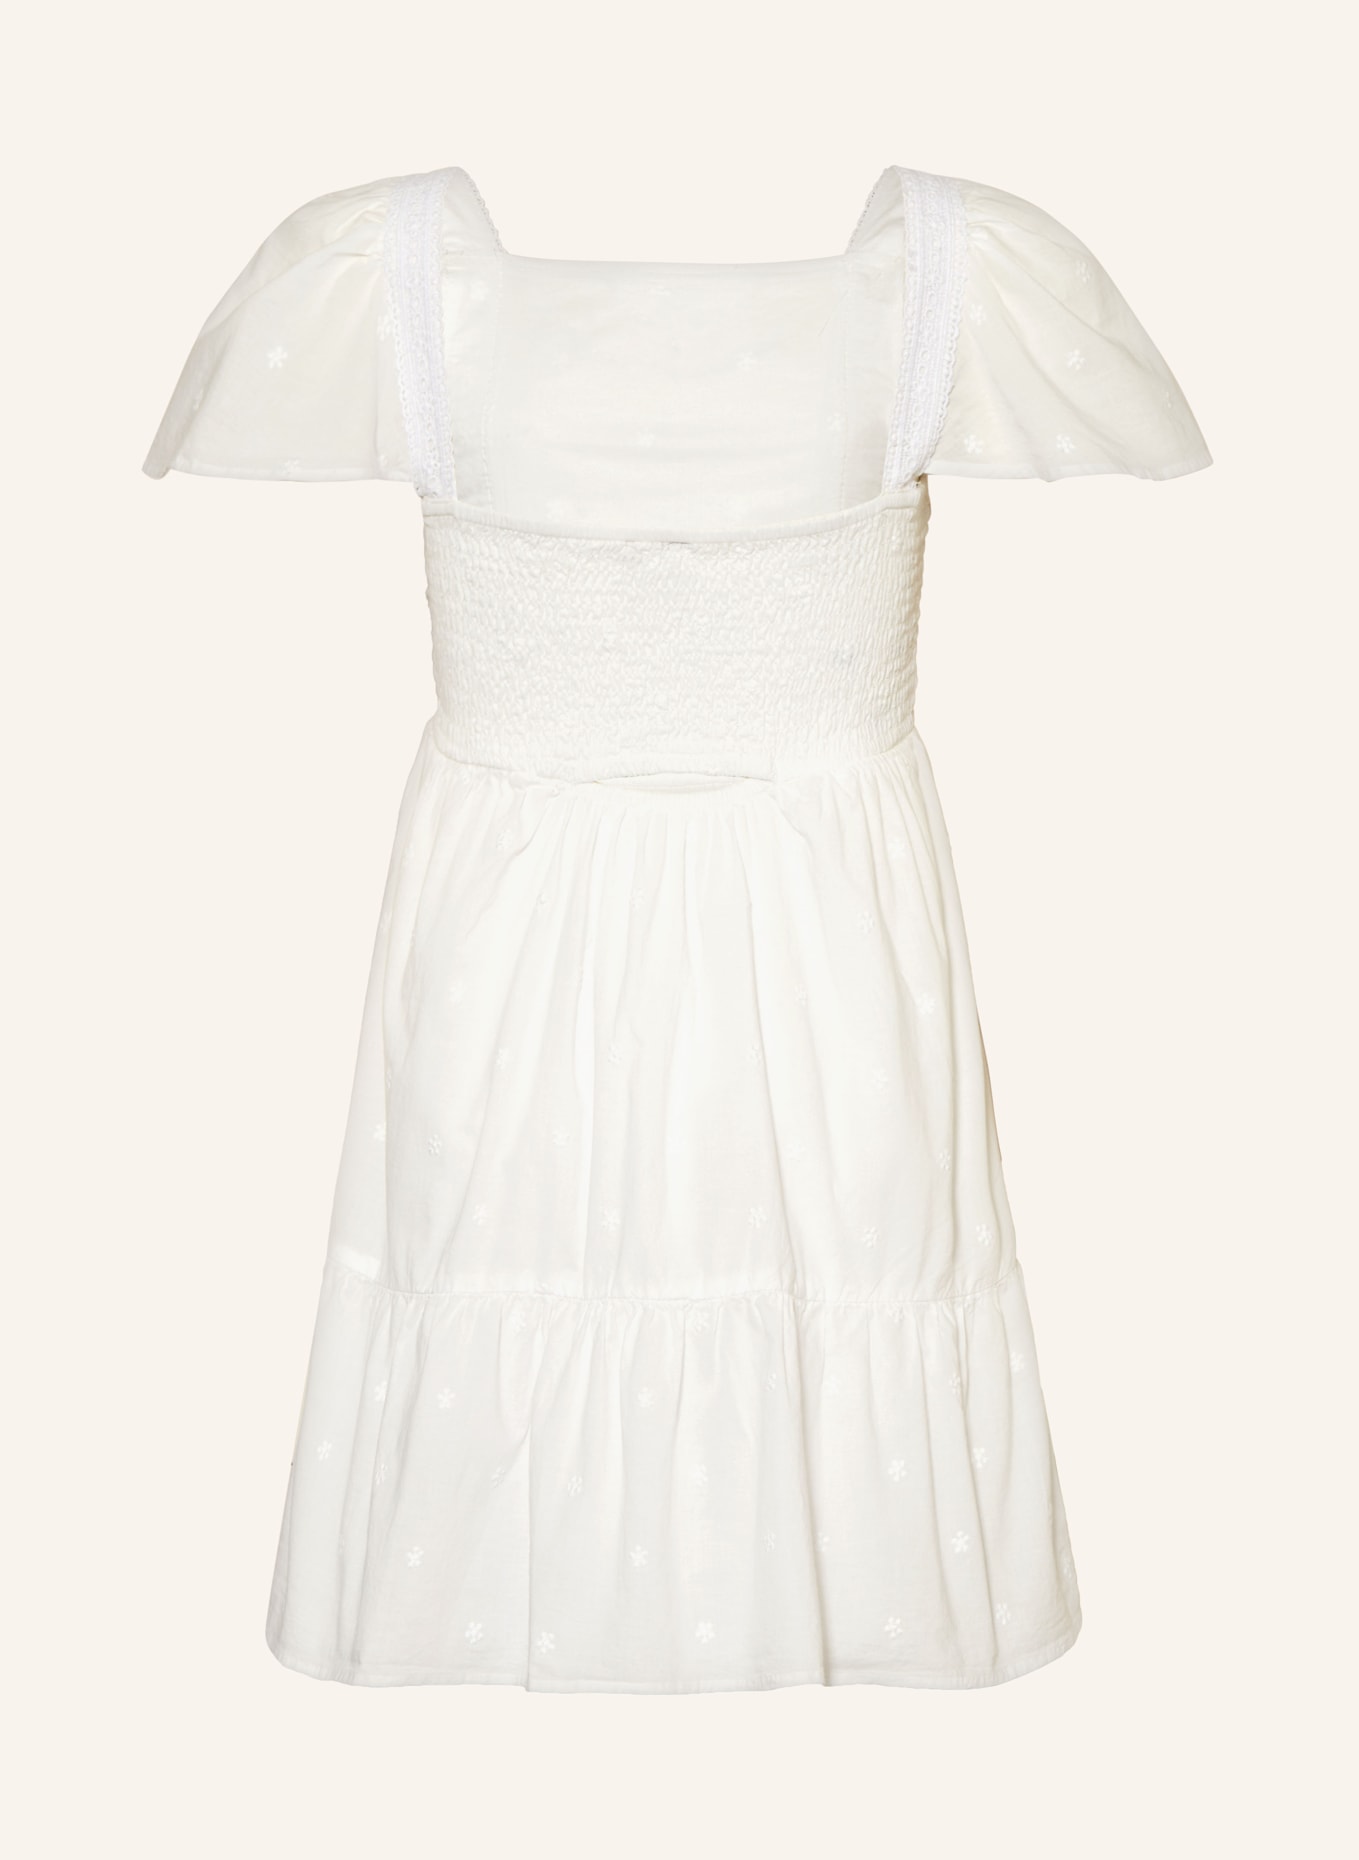 GARCIA Kleid mit Spitze und Volants, Farbe: WEISS (Bild 2)